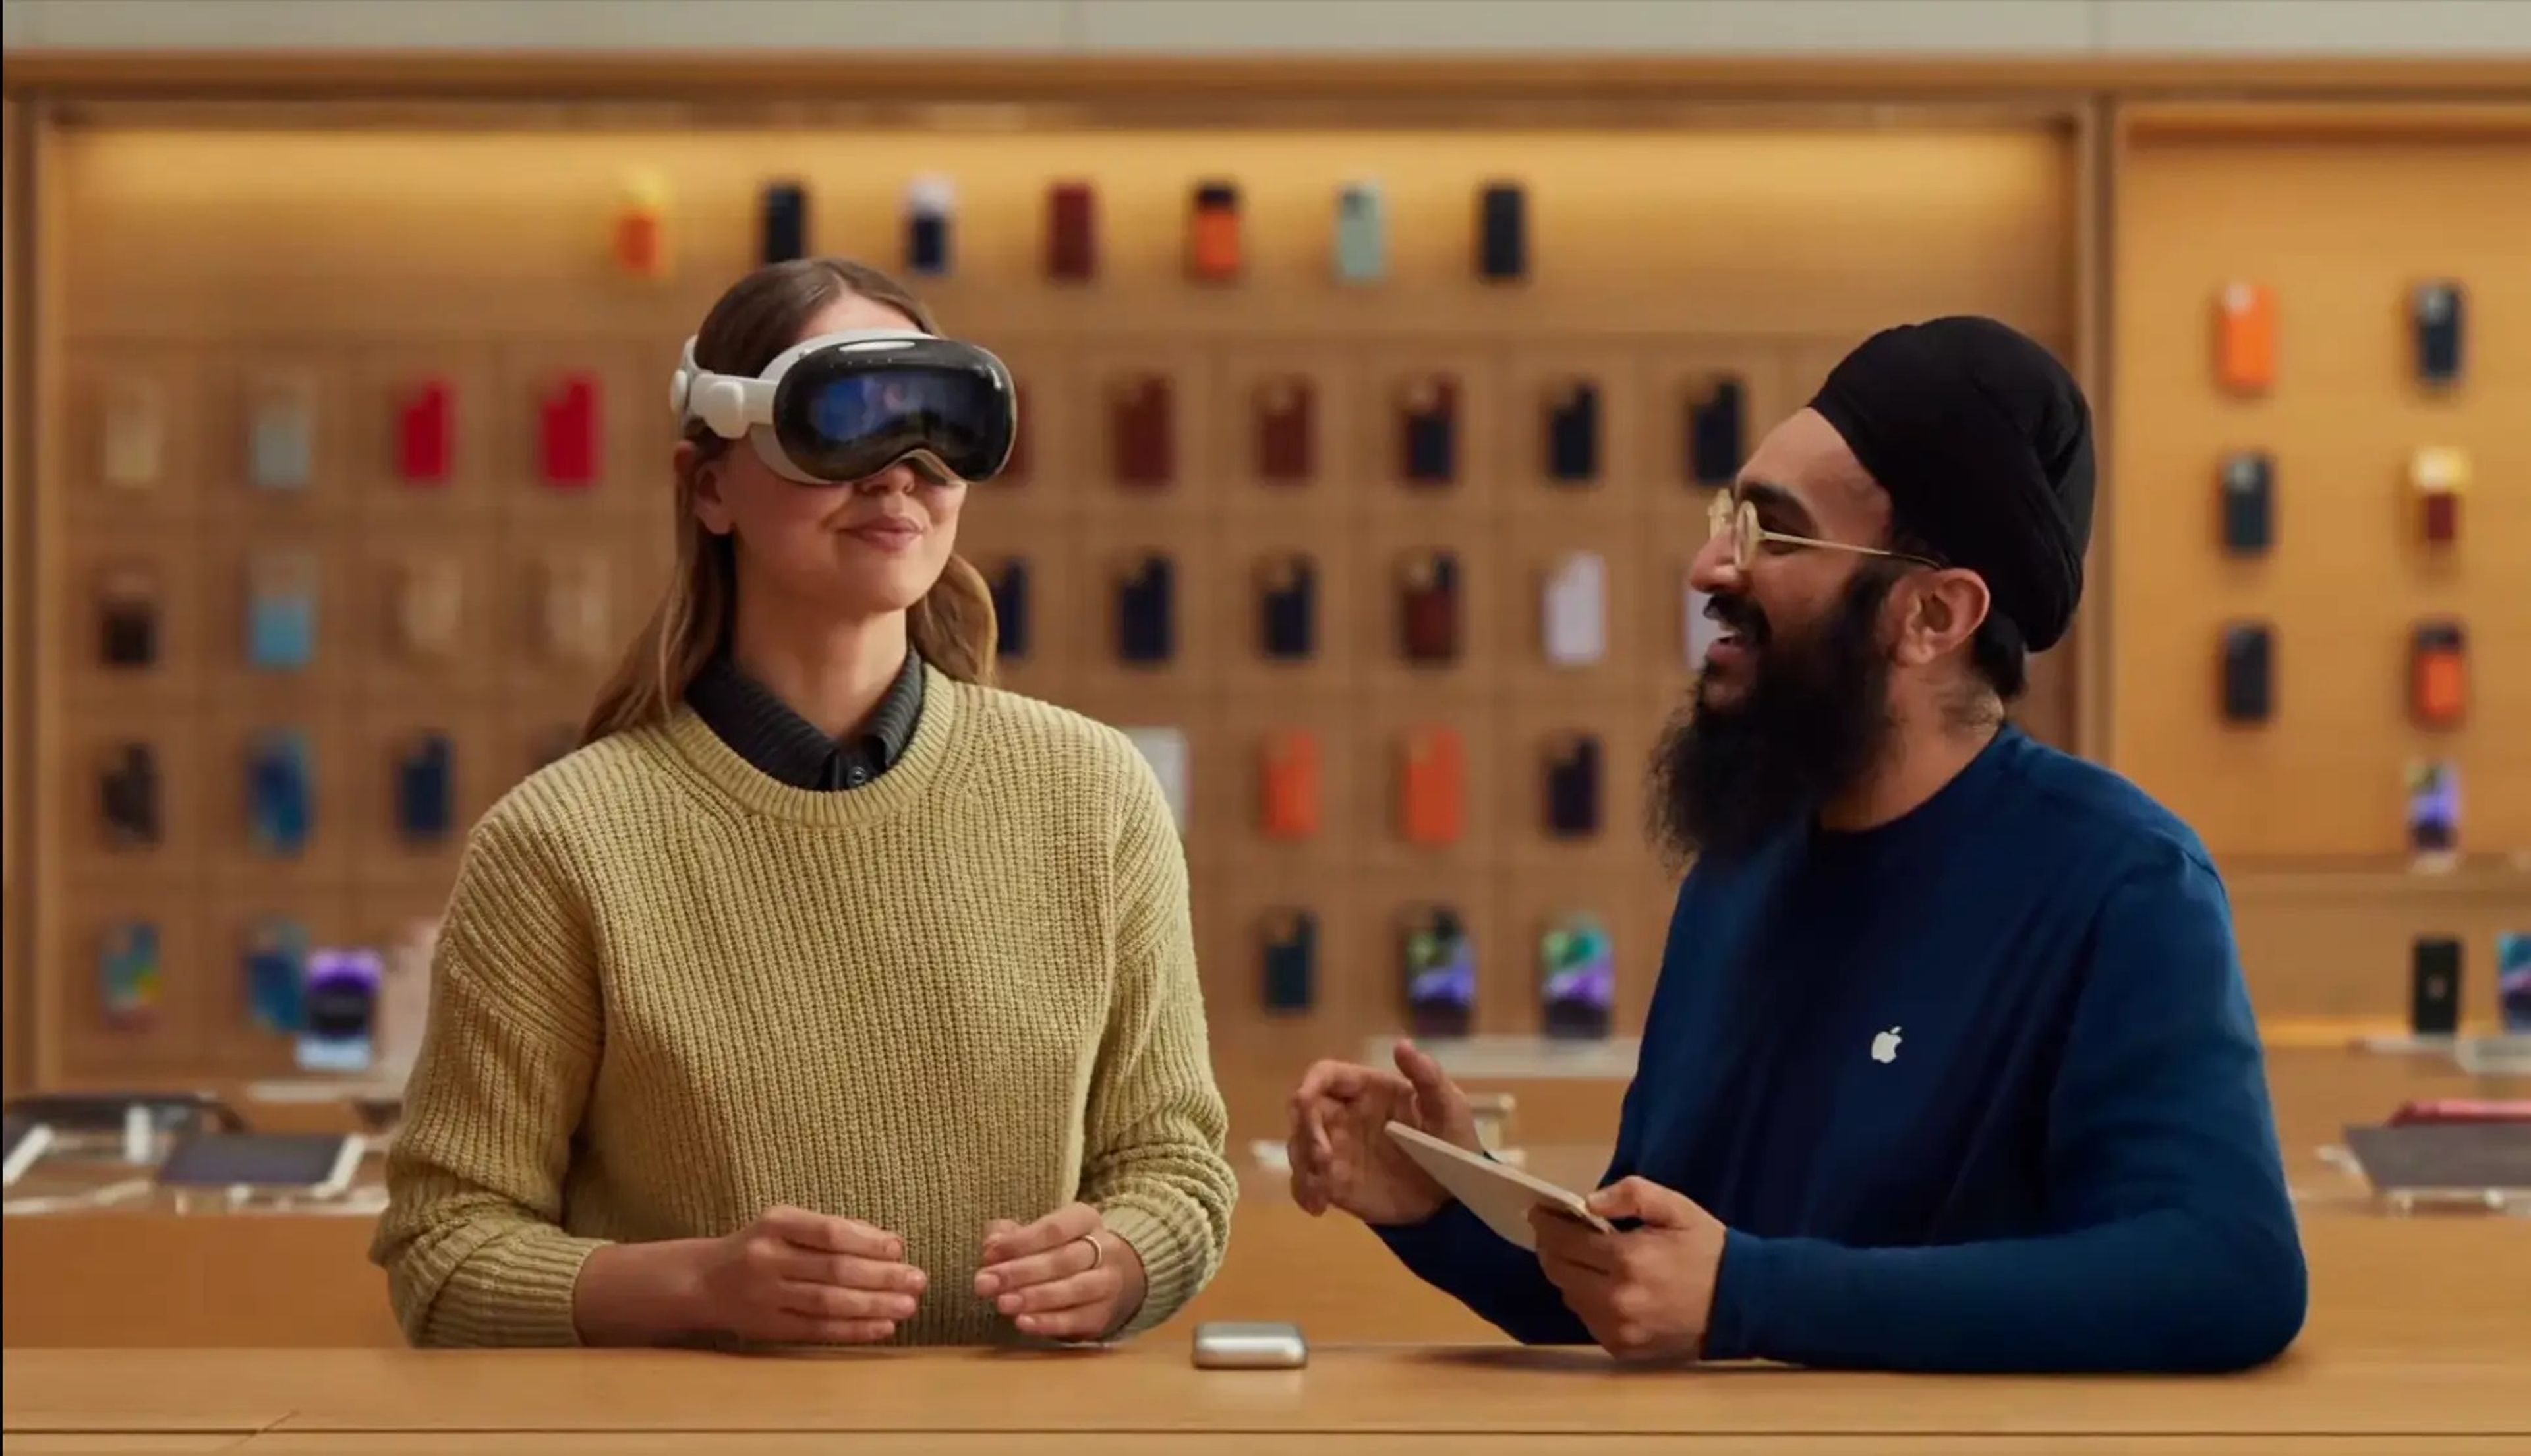 Los compradores de unas Vision Pro podrán realizar una demostración individual junto al personal de ventas de Apple cuando reciban las gafas por primera vez.